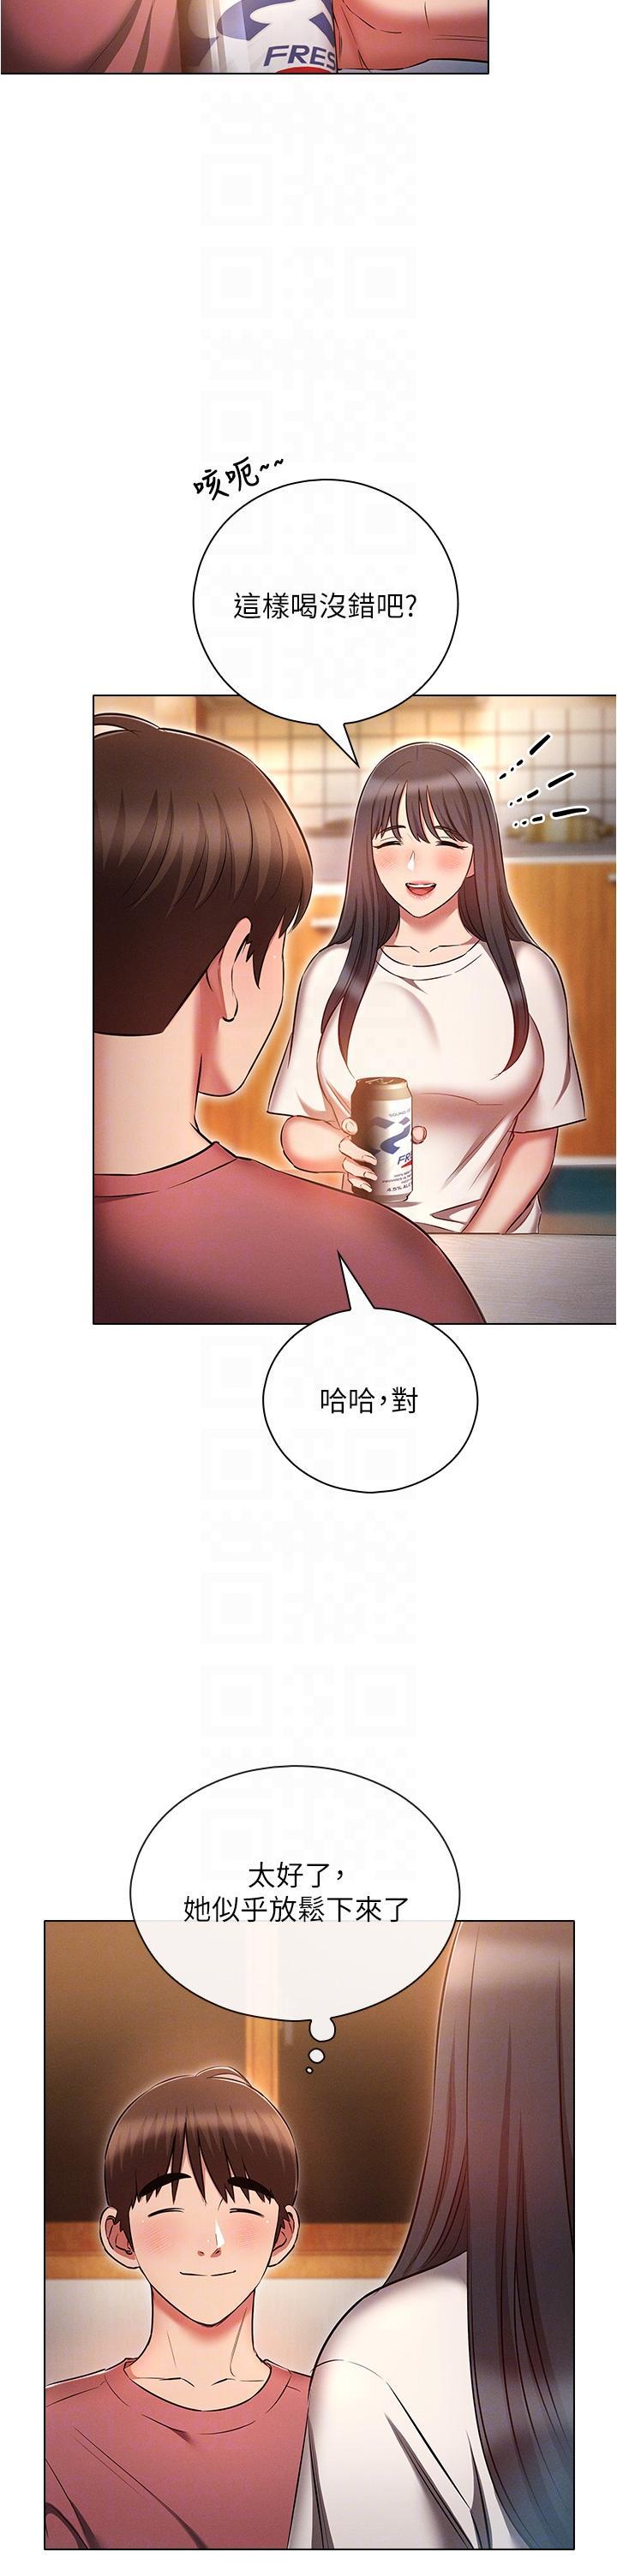 韩国污漫画 魯蛇的多重宇宙 第50话 废话少说快插我! 10